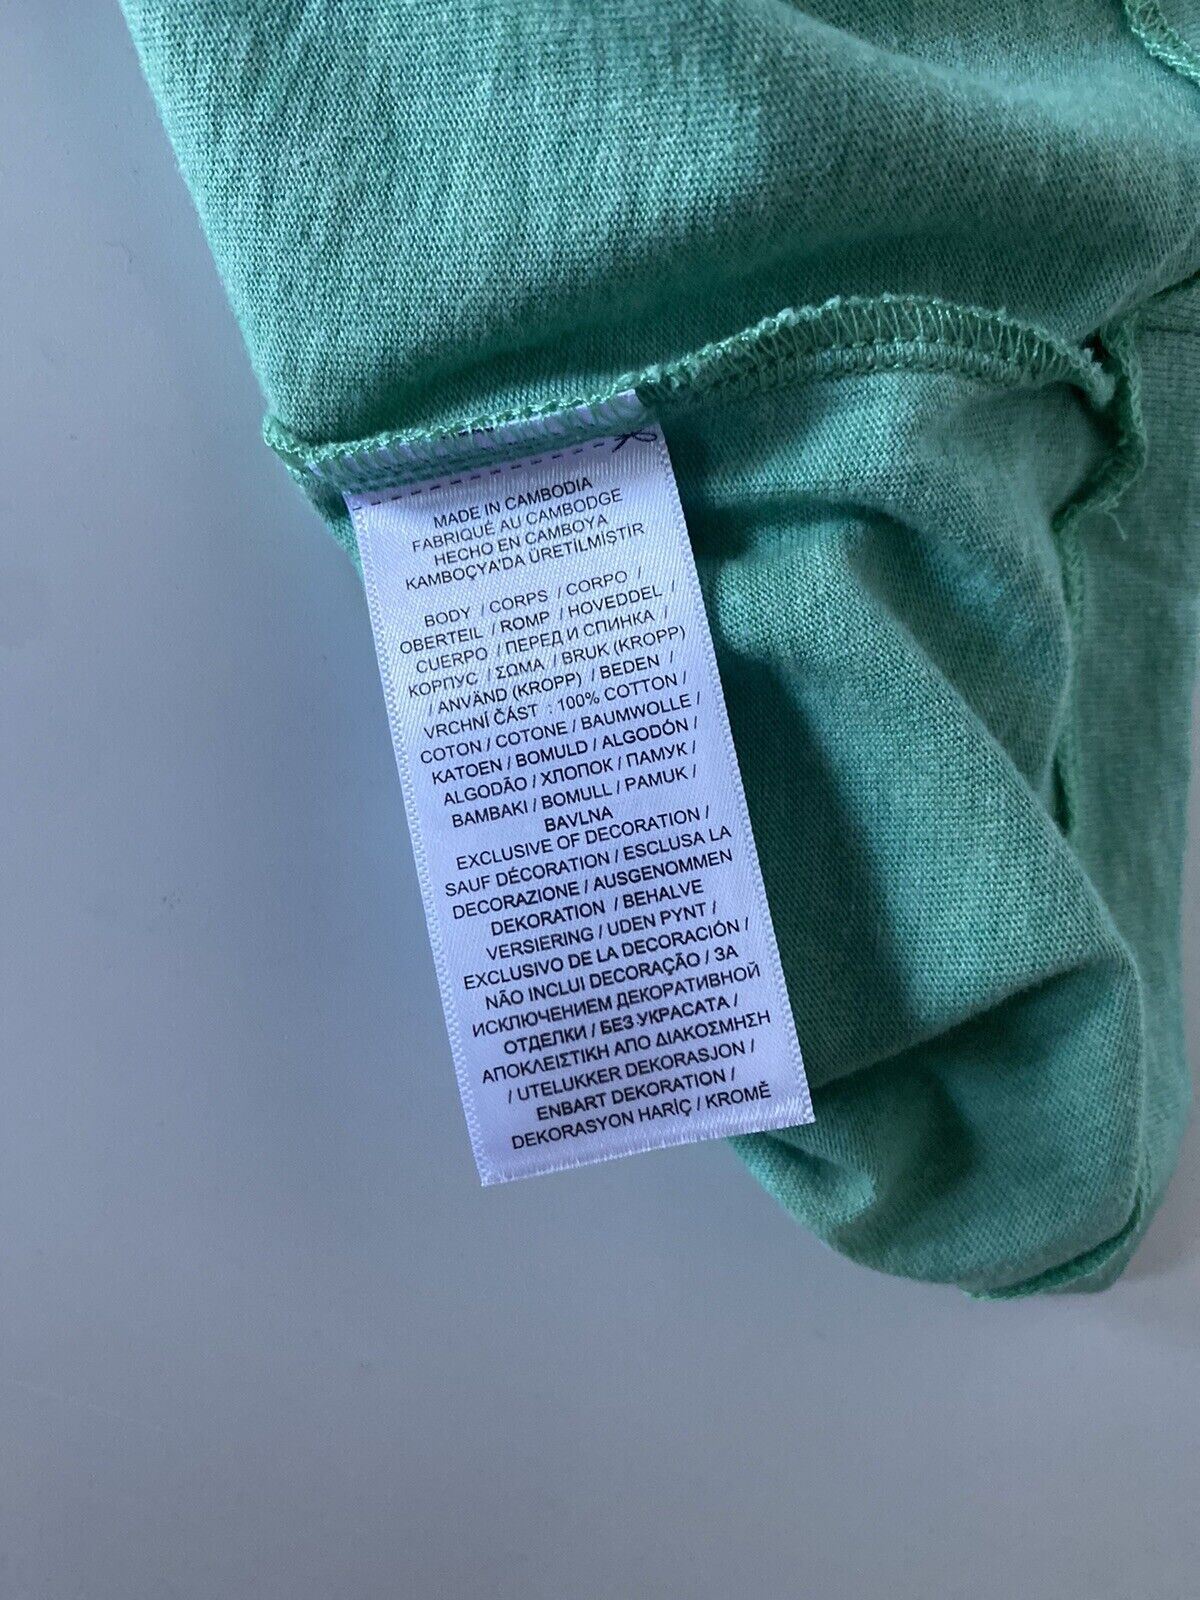 Neu mit Etikett: Polo Ralph Lauren Kurzarm-Baumwoll-T-Shirt Grün Medium 